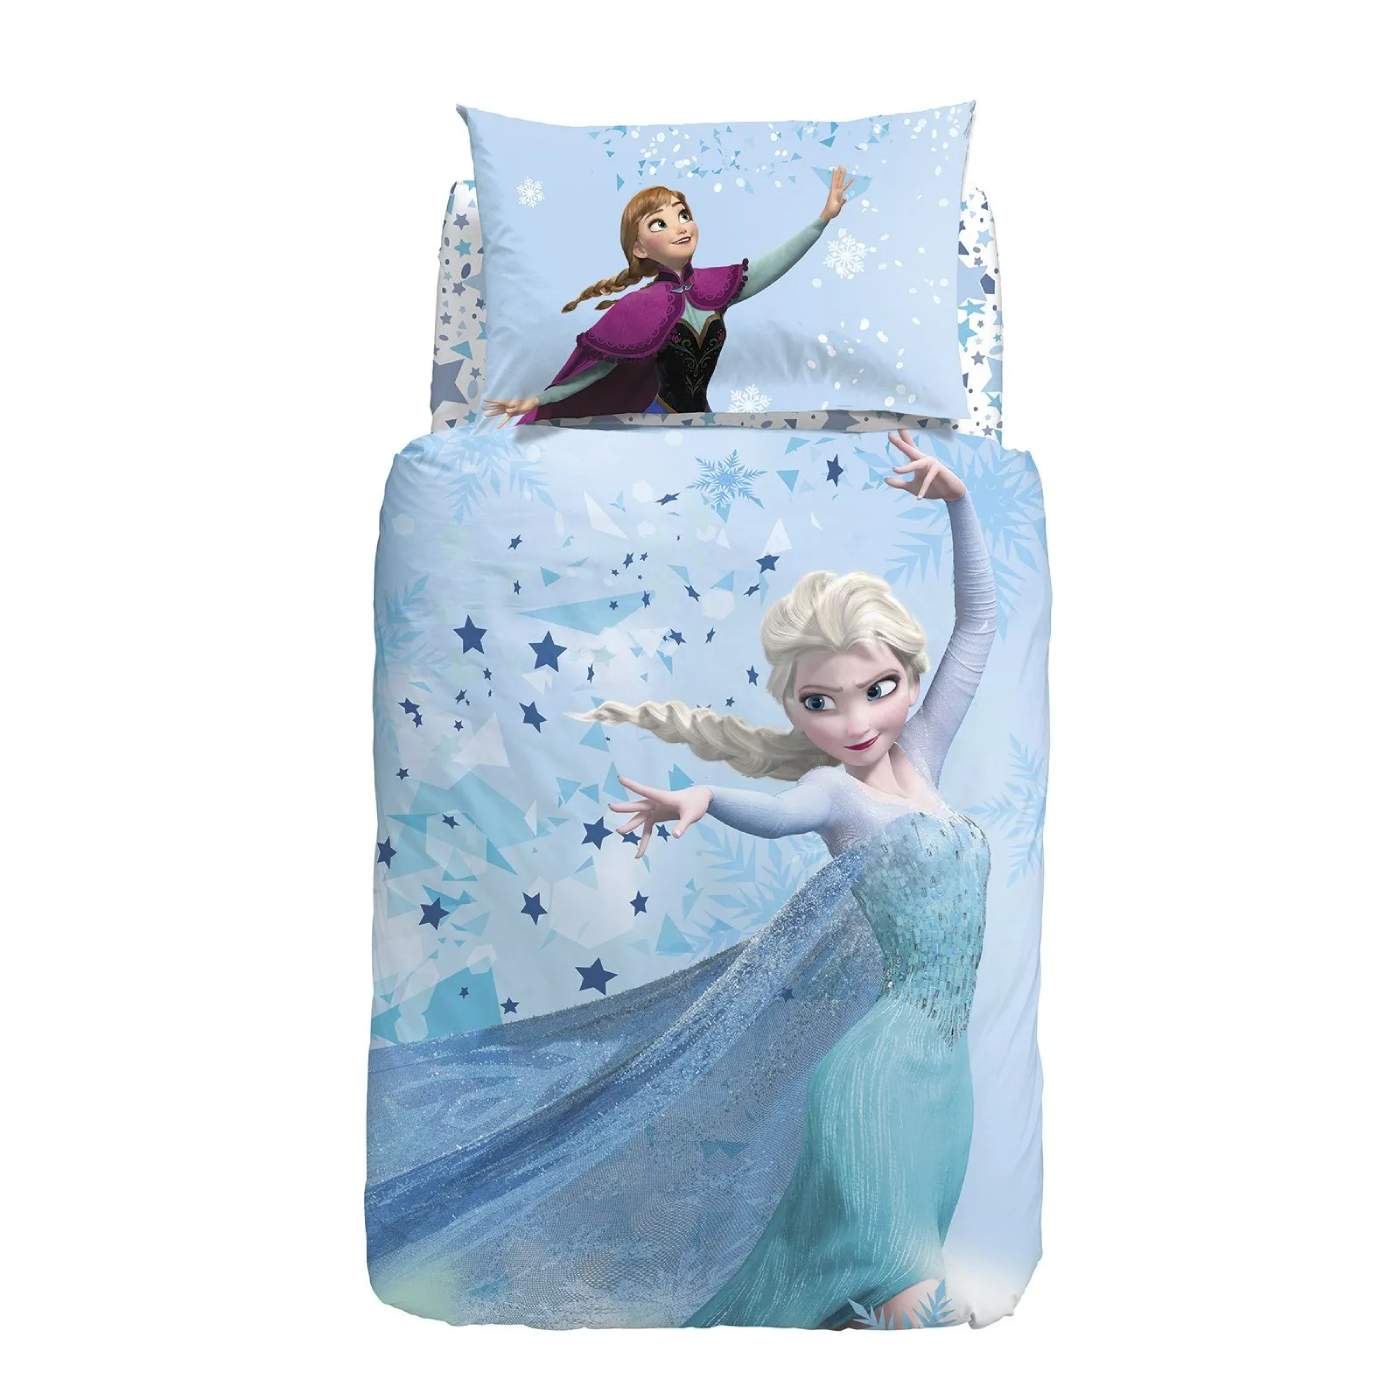 Copripiumino Frozen Dream Caleffi Disney in cotone letto singolo